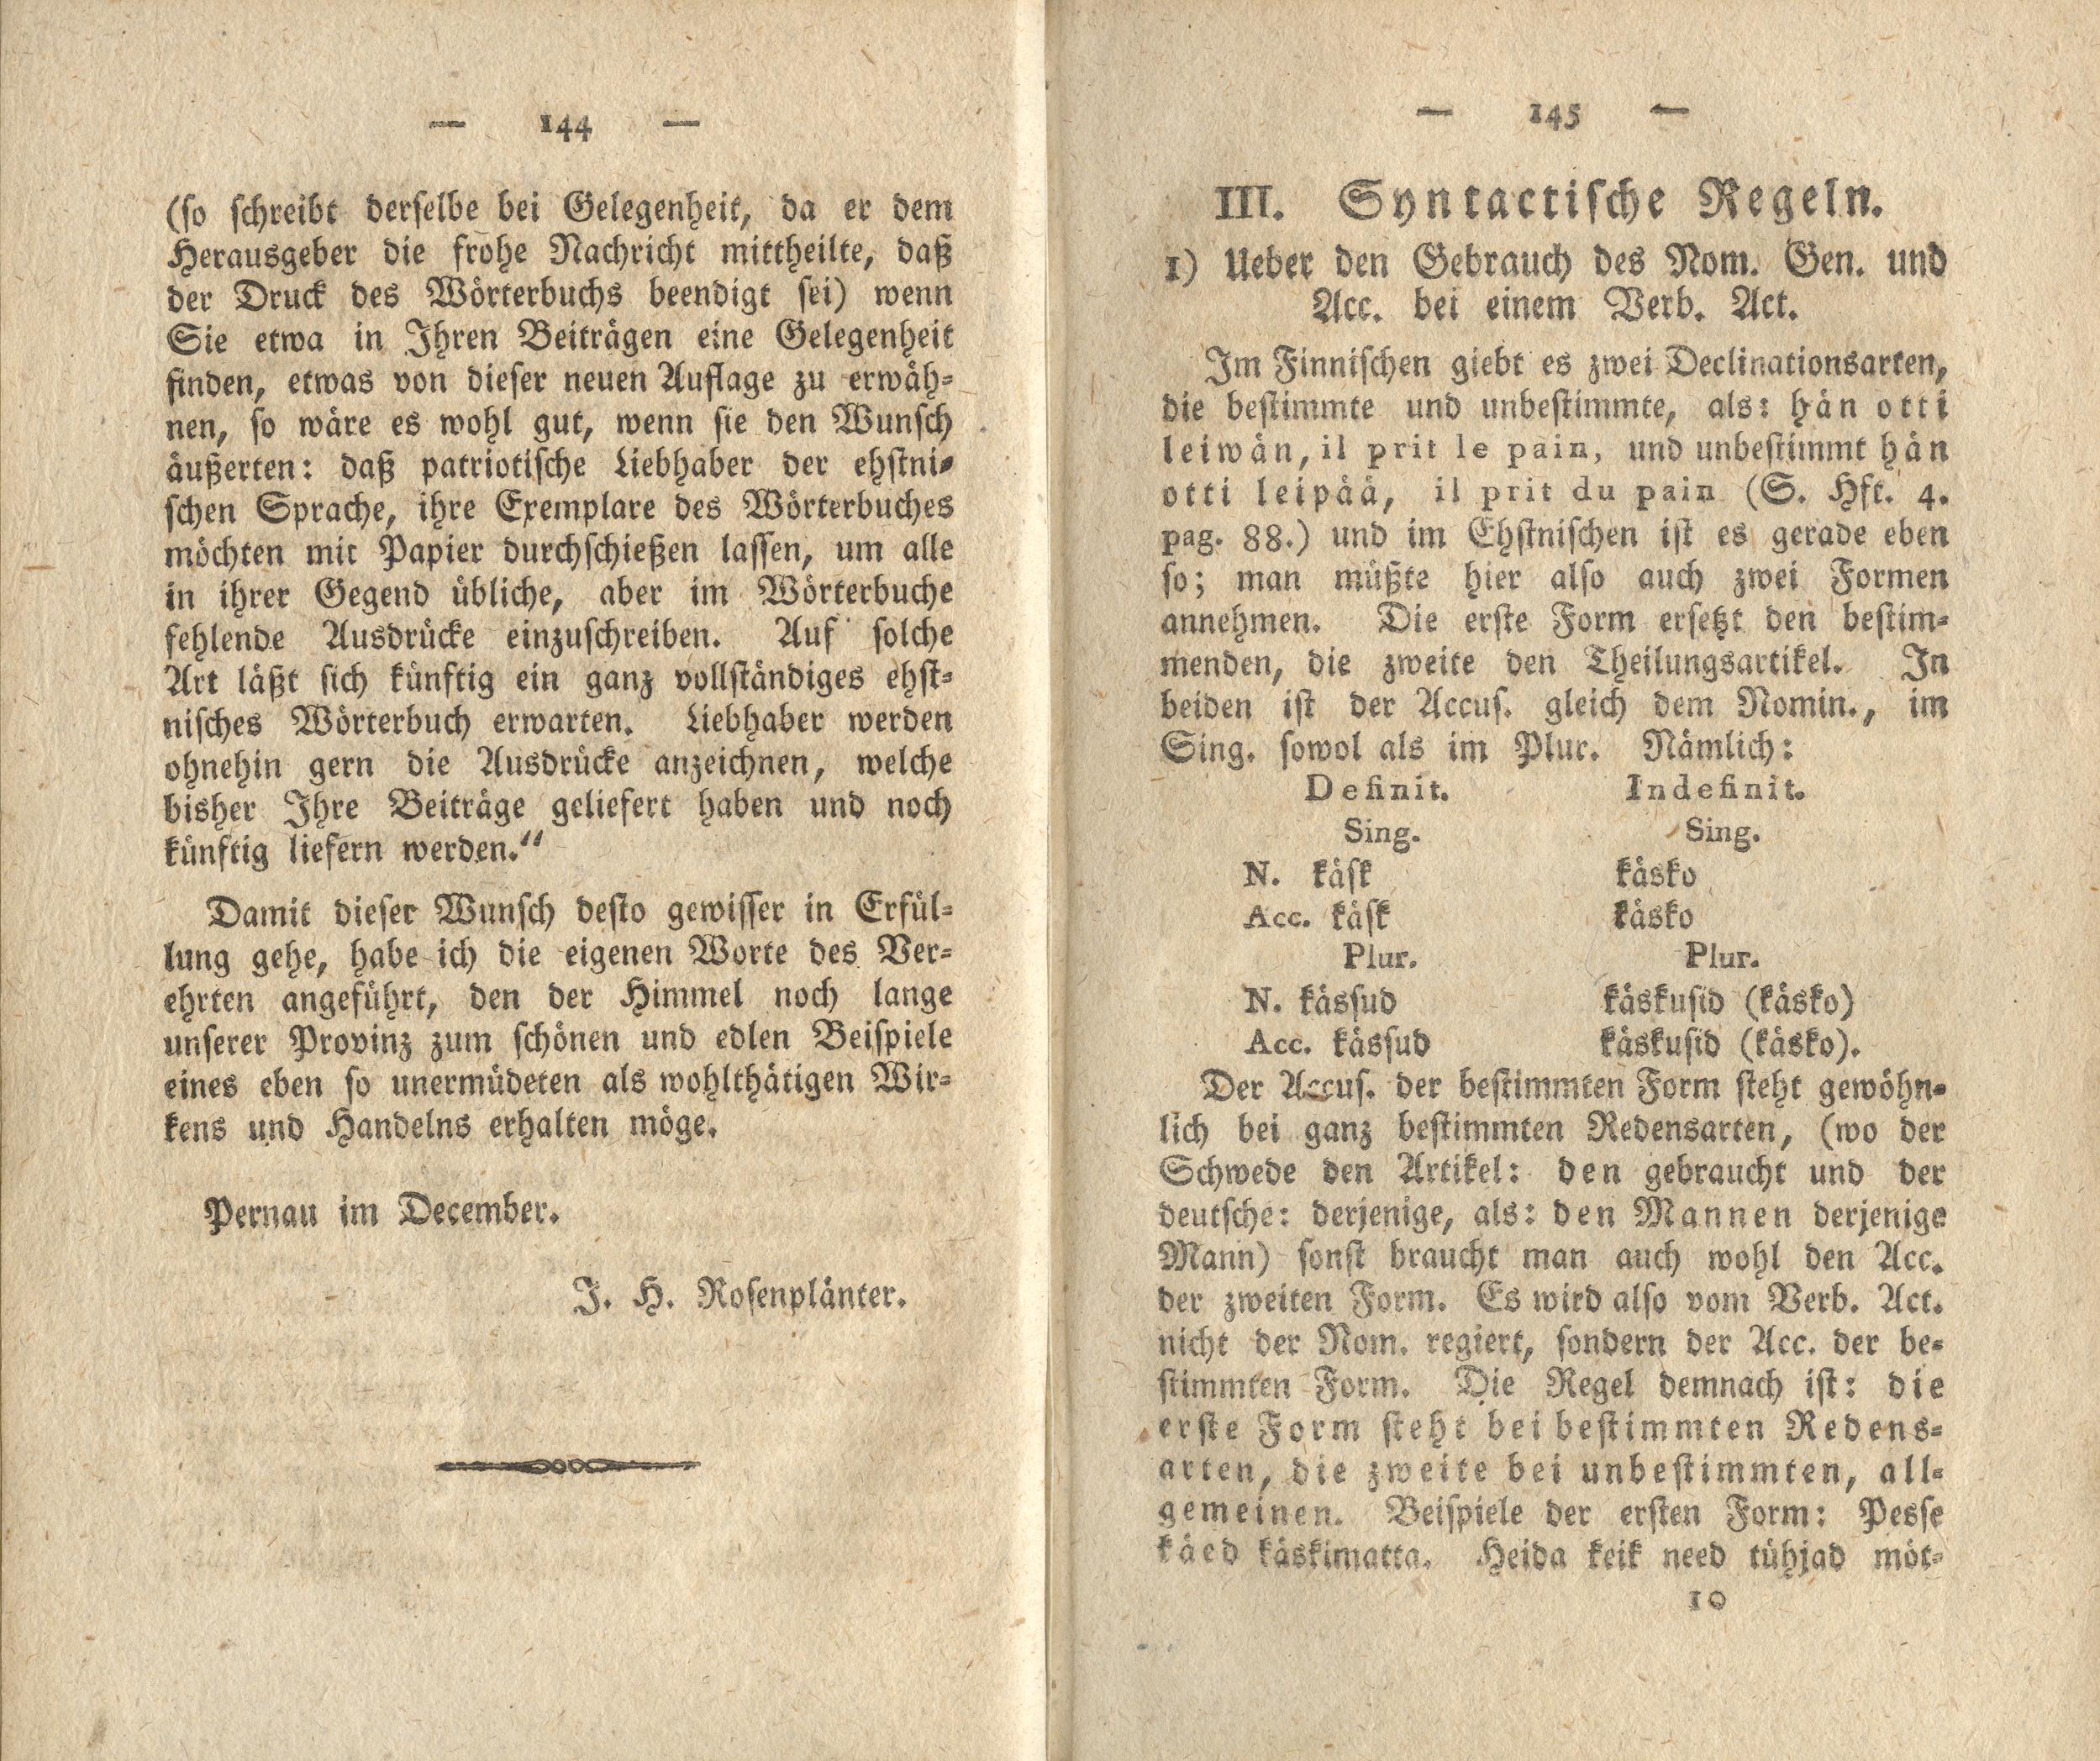 Ueber den Gebrauch des Nom. Gen. und Acc. bei einem Verb. Act. (1818) | 1. (144-145) Main body of text